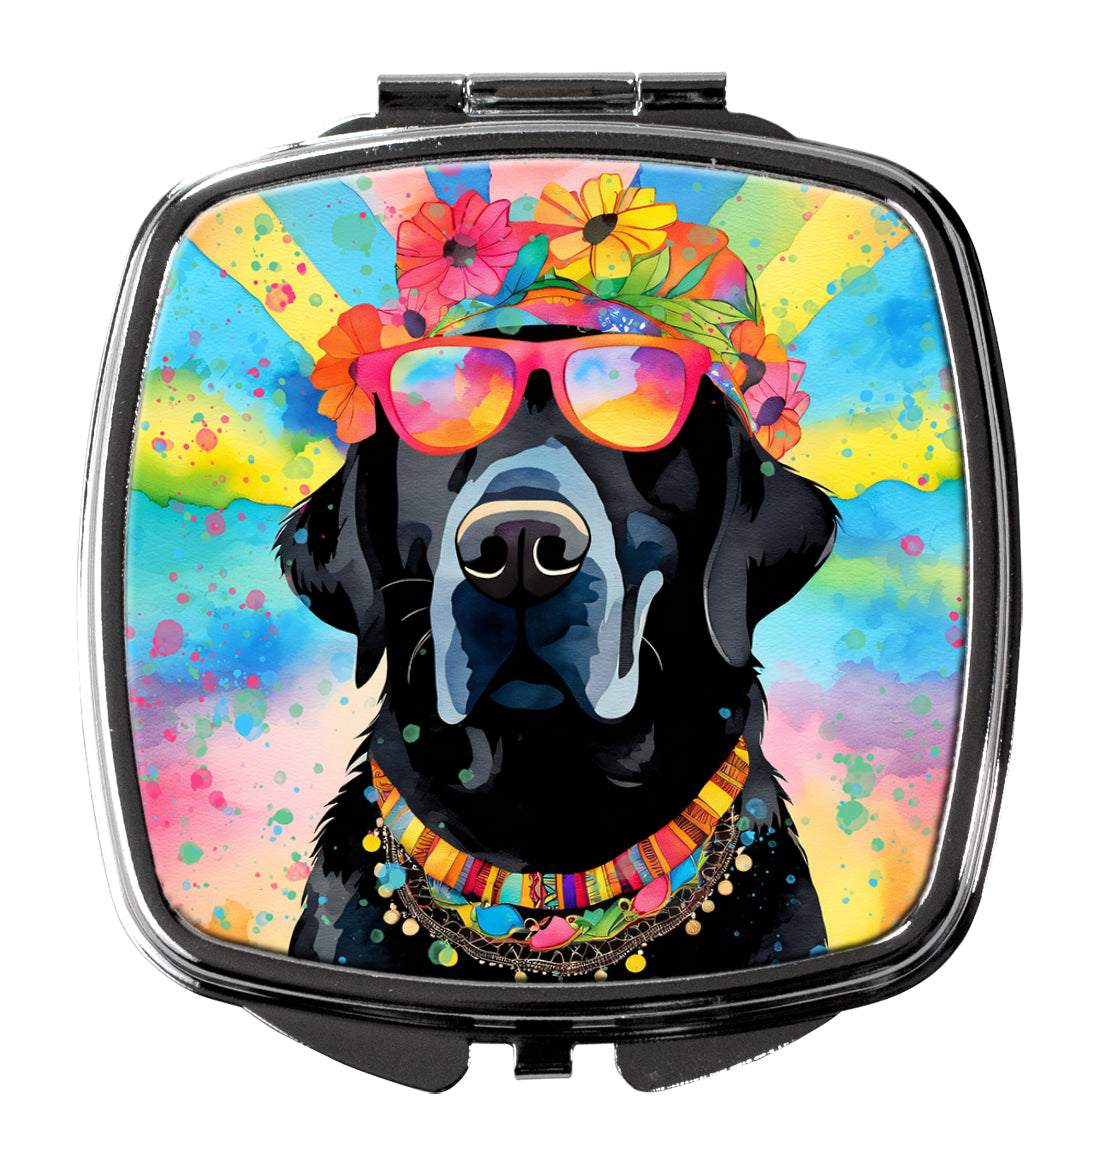 Buy this Black Labrador Hippie Dawg Compact Mirror